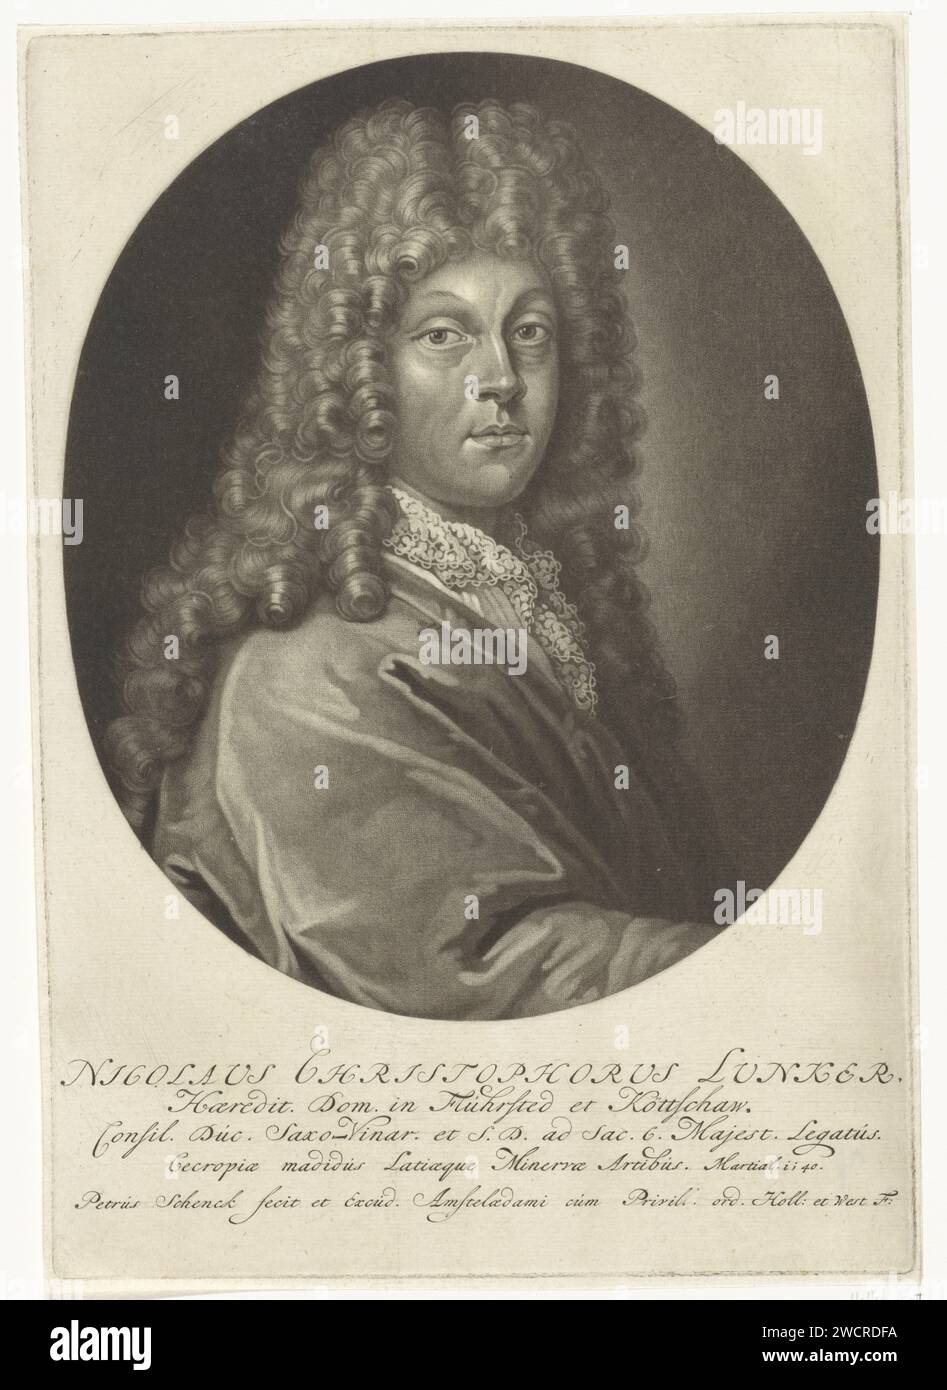 Portrait de Nicolaus Christoph Lunker, Pieter Schenk (I), 1670 - 1713 estampe le diplomate Nicolaus Christoph Lunker. Il porte une longue perruque curl et un col en dentelle. Perruque gravure papier Amsterdam Banque D'Images